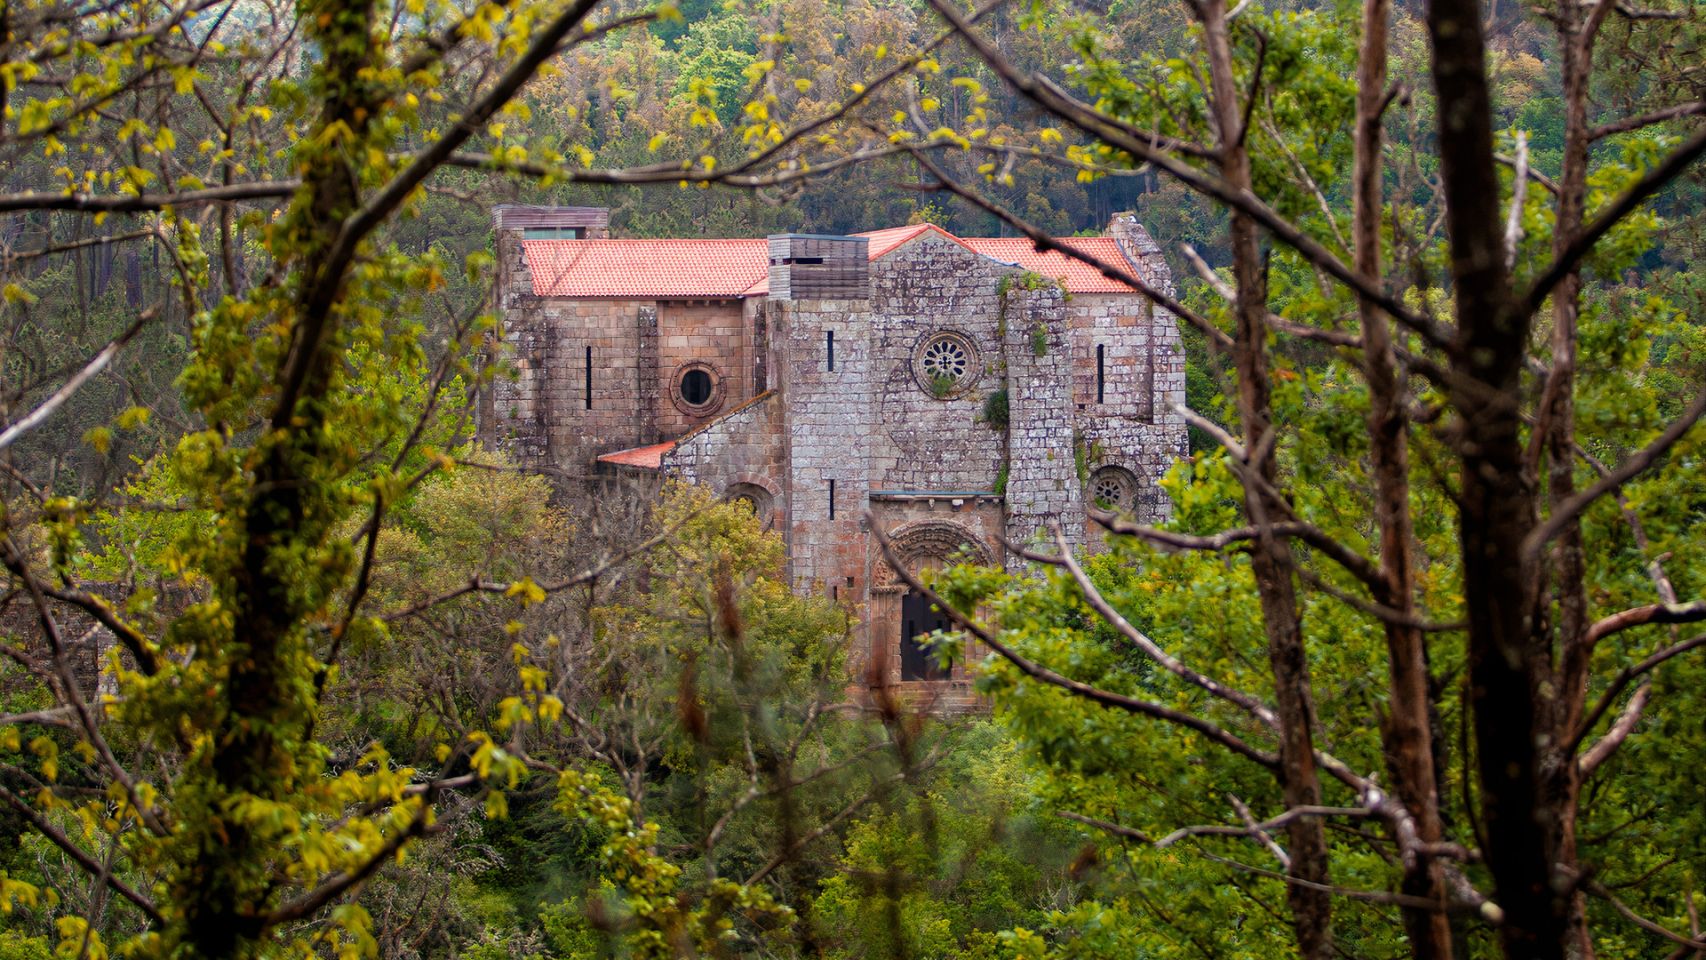 Monasterio de Carboeiro (Foto: turismo.gal)